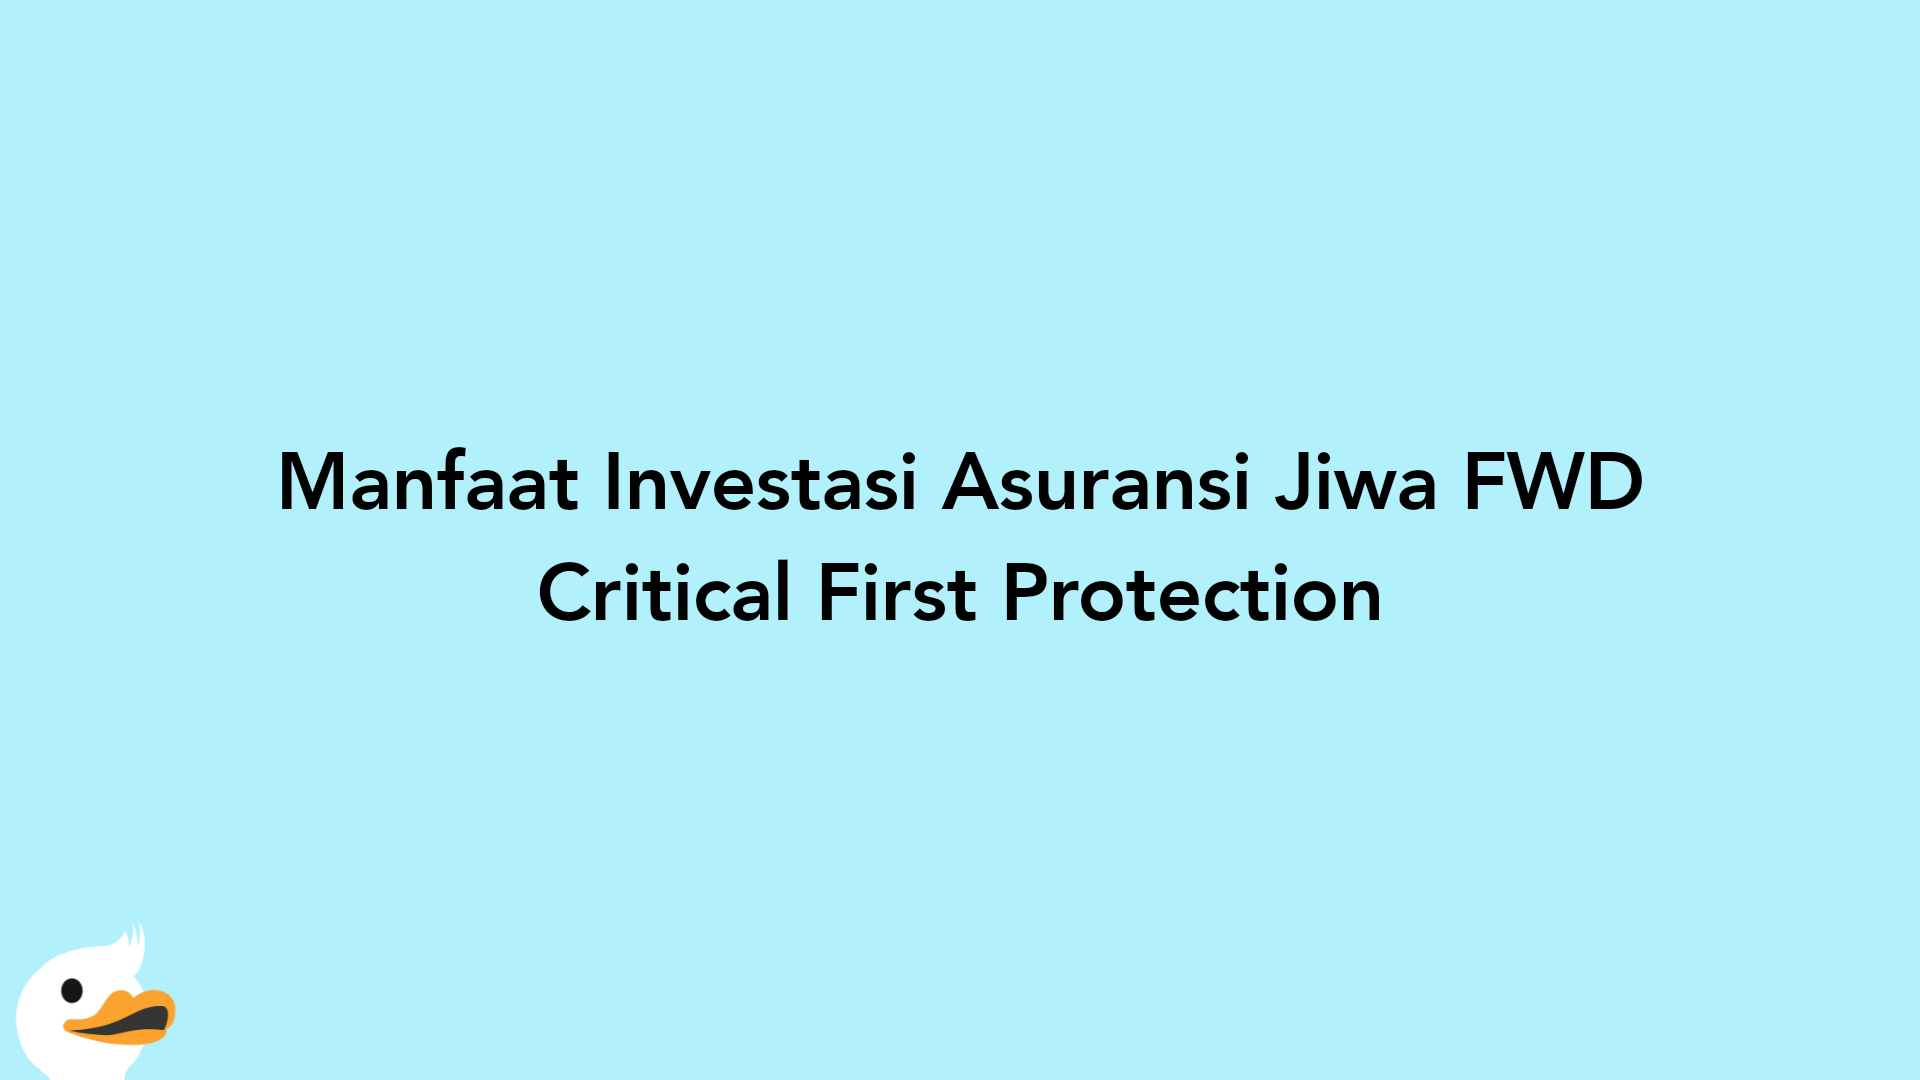 Manfaat Investasi Asuransi Jiwa FWD Critical First Protection